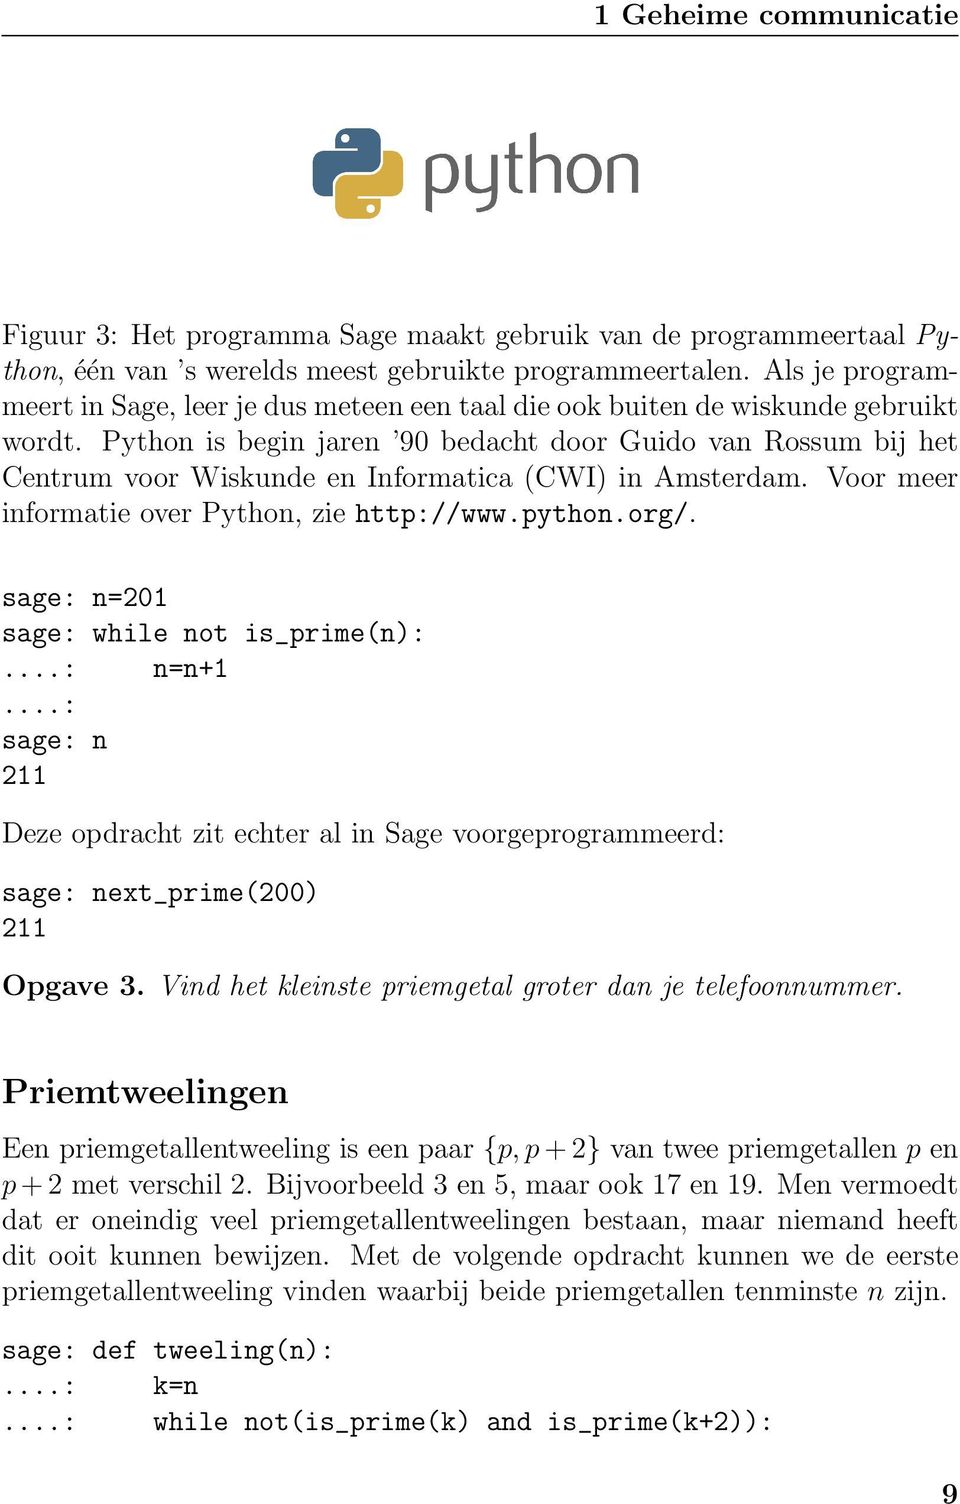 Python is begin jaren 90 bedacht door Guido van Rossum bij het Centrum voor Wiskunde en Informatica (CWI) in Amsterdam. Voor meer informatie over Python, zie http://www.python.org/.